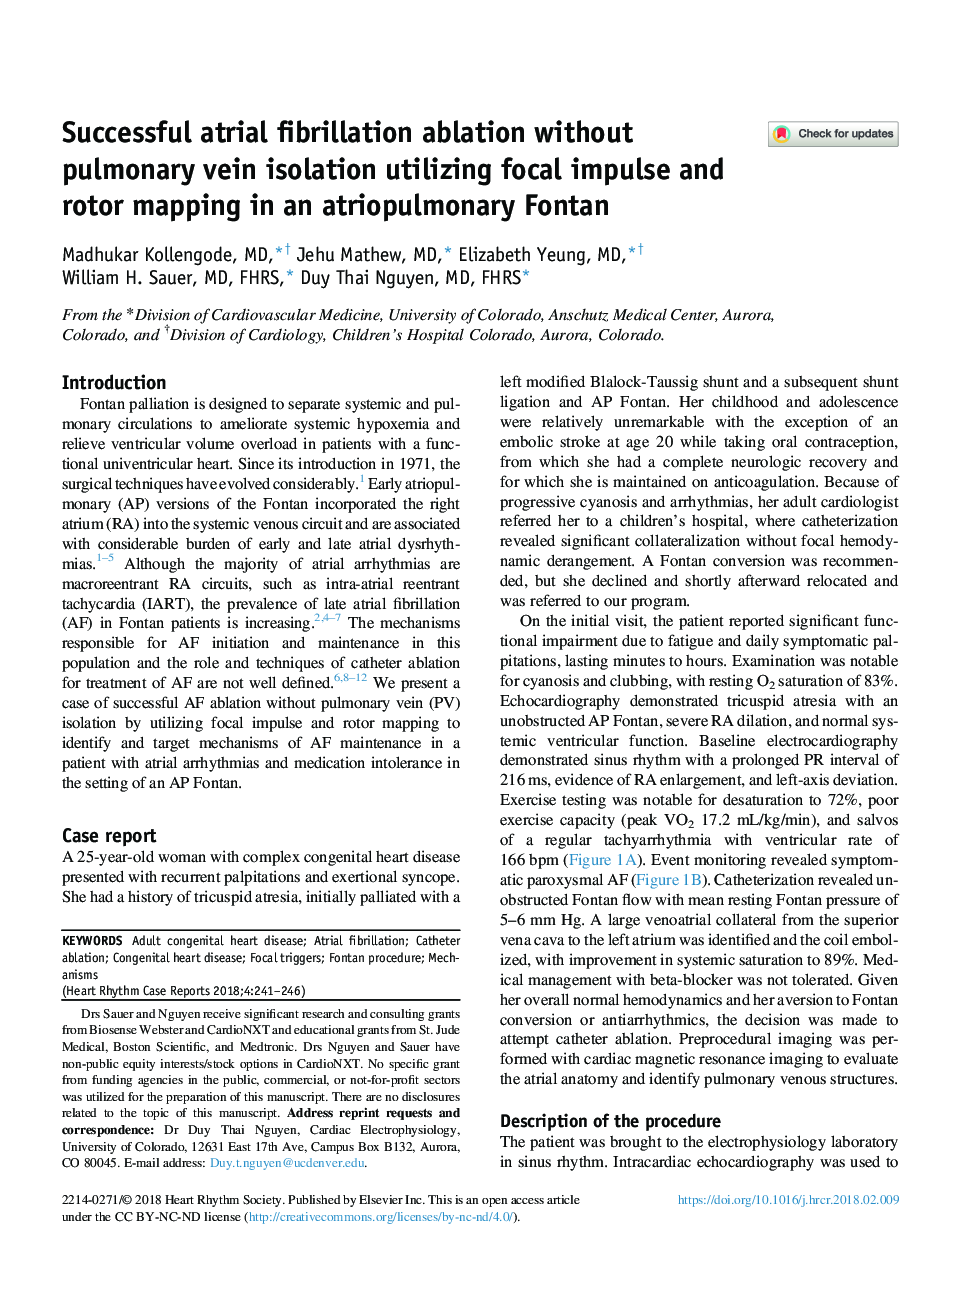 حذف فیبریلاسیون دهلیزی موفق بدون انزوا ورید ریوی با استفاده از ترسیم کانال و نقشه کشی روتور در فونتان اتیوپولمری 